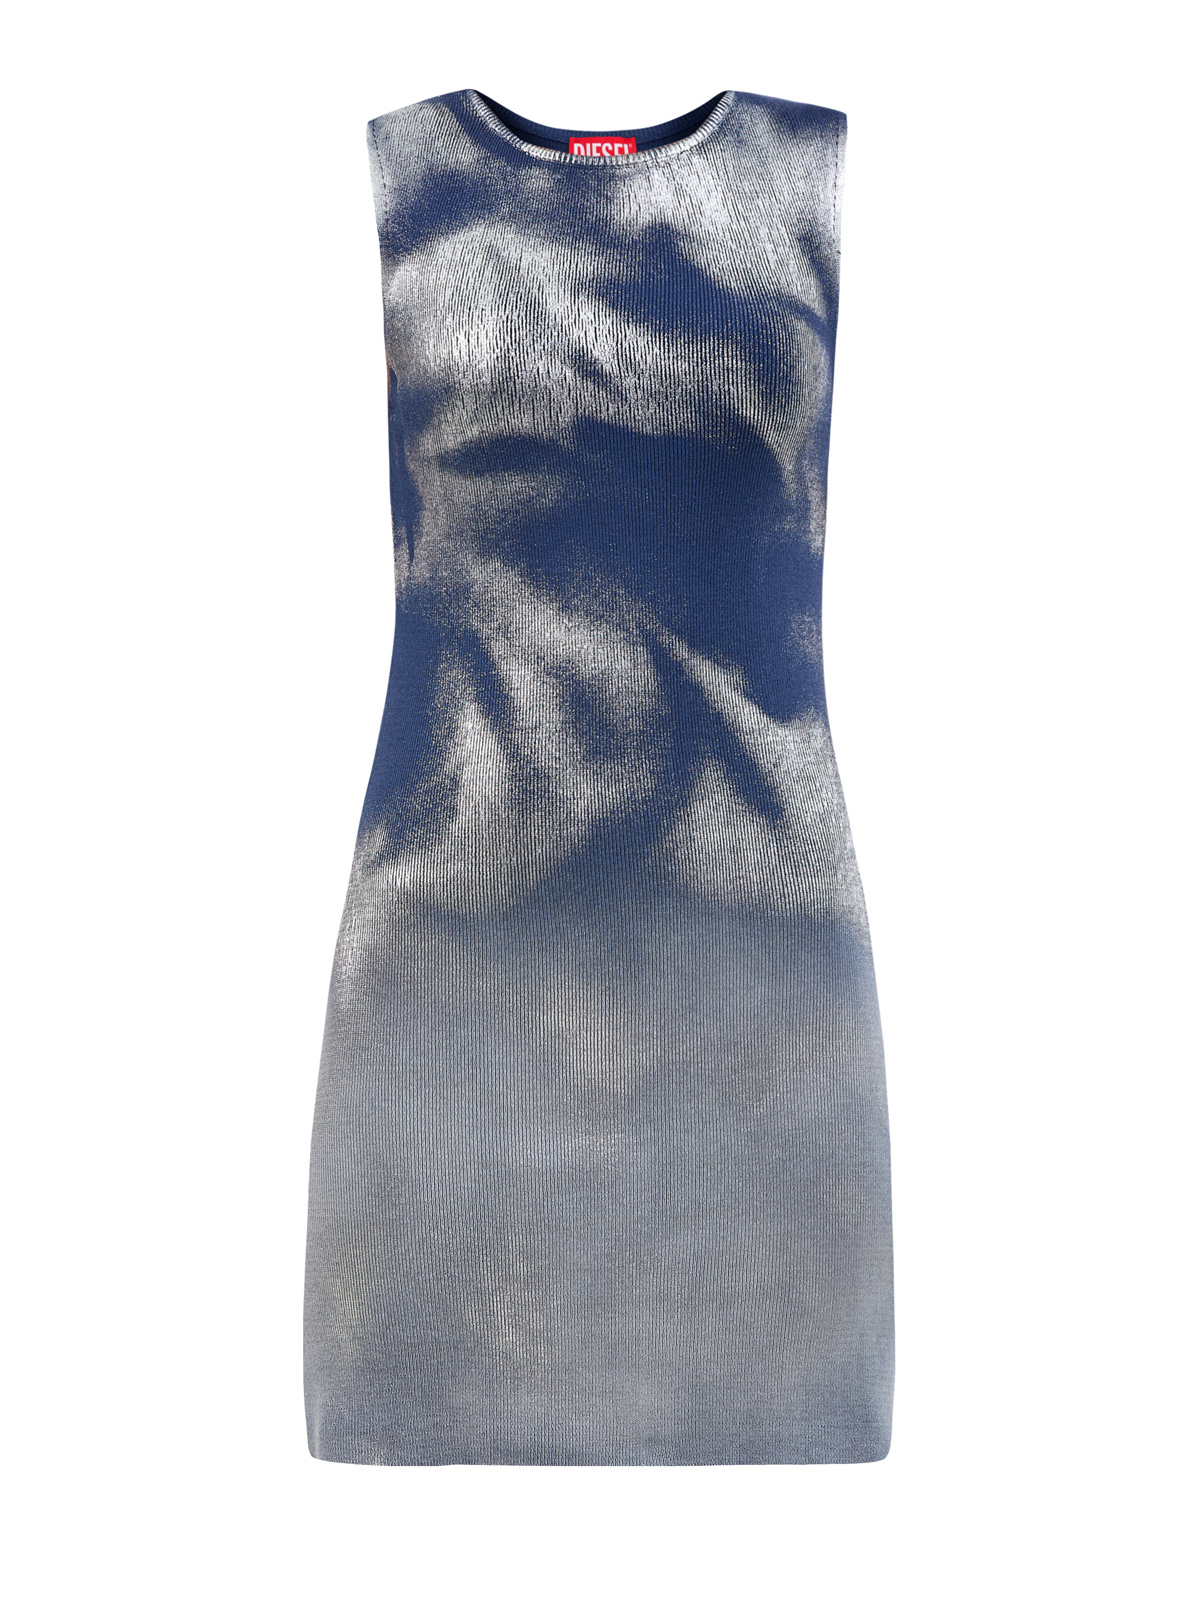 Облегающее платье-мини M-Idony с эффектом металлик